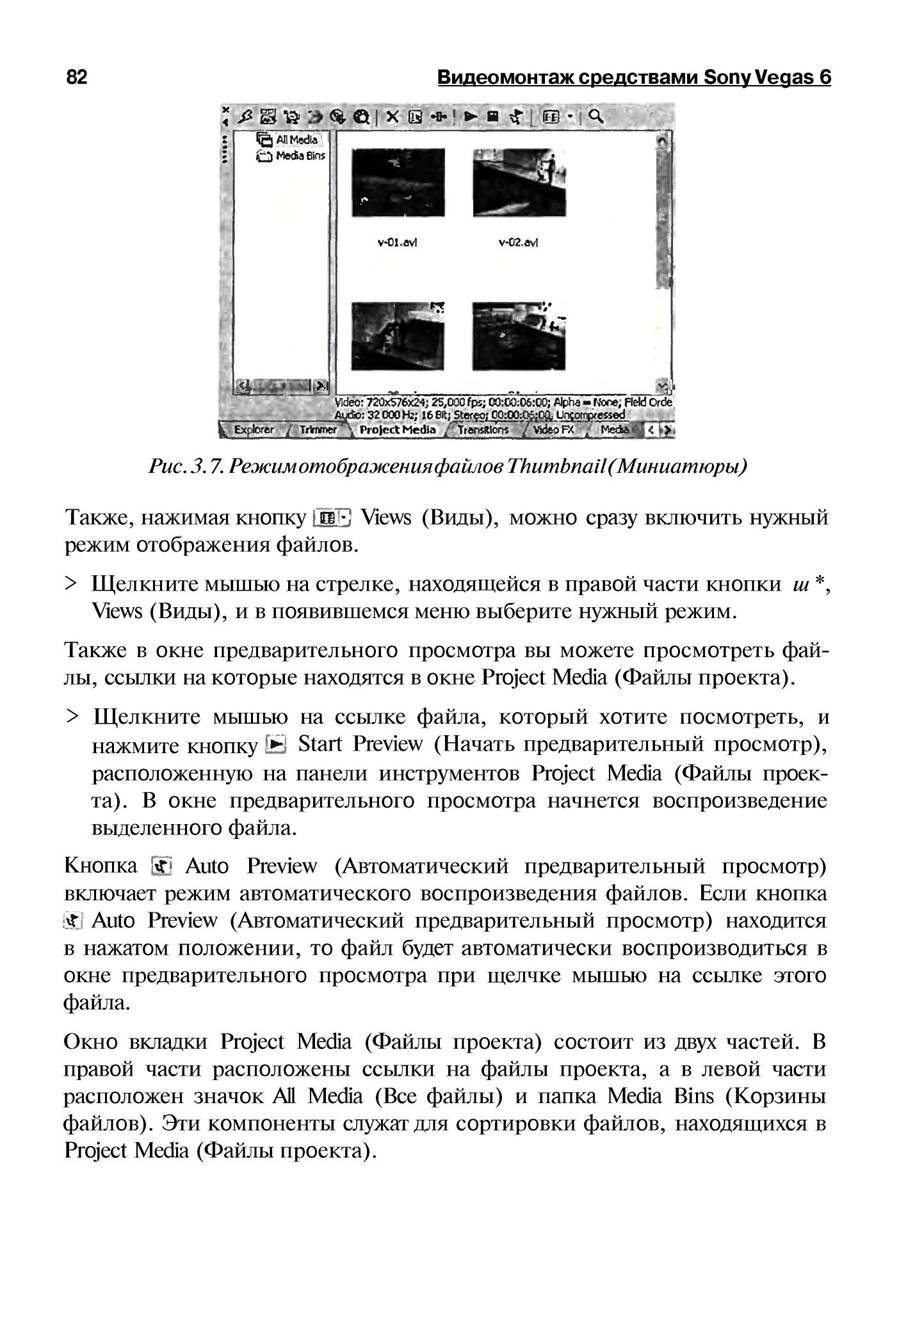 http://redaktori-uroki.3dn.ru/_ph/13/148274521.jpg